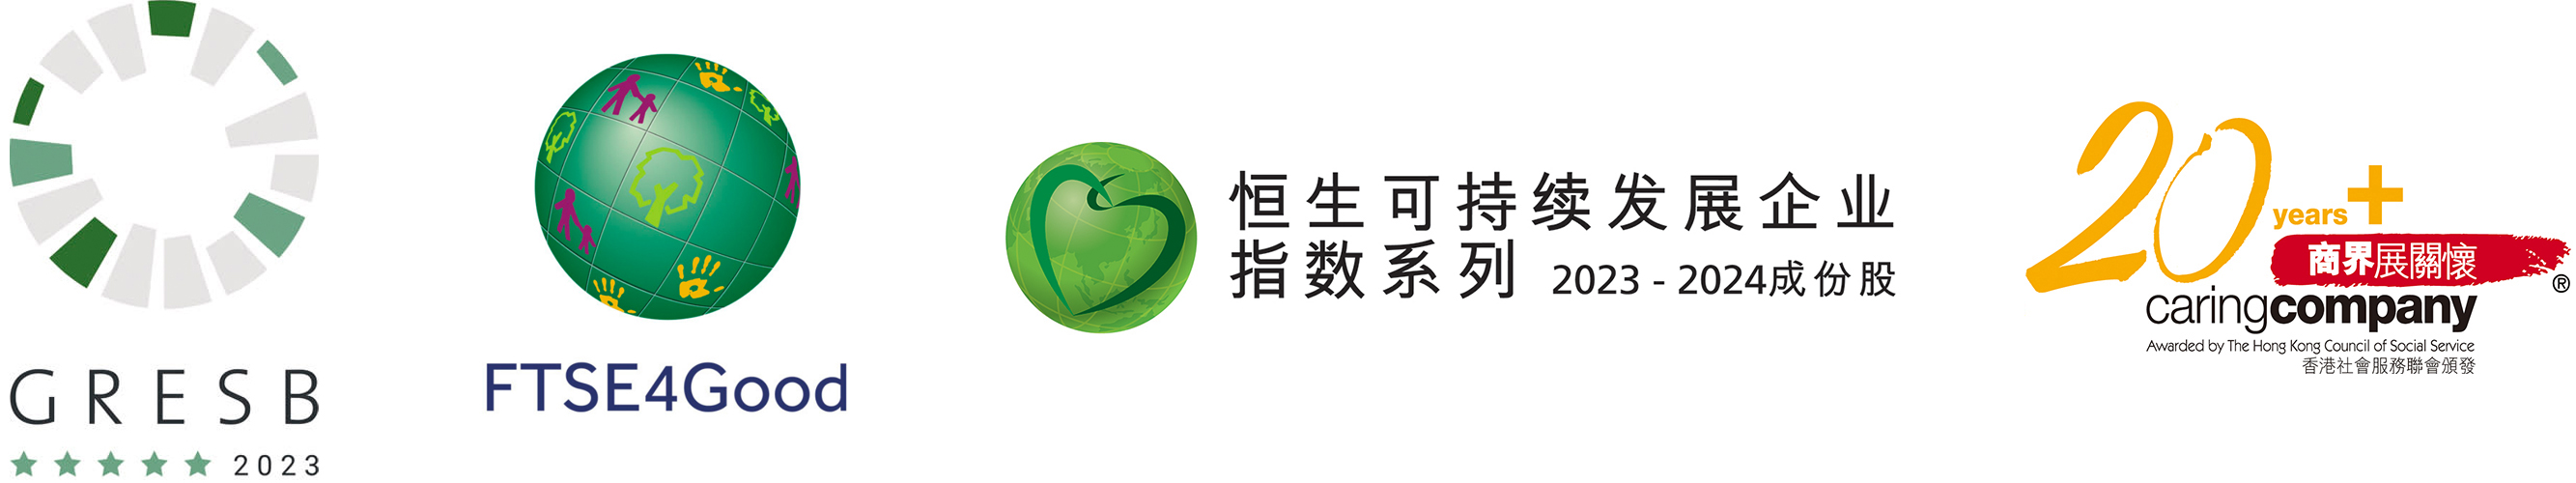 minisite logo